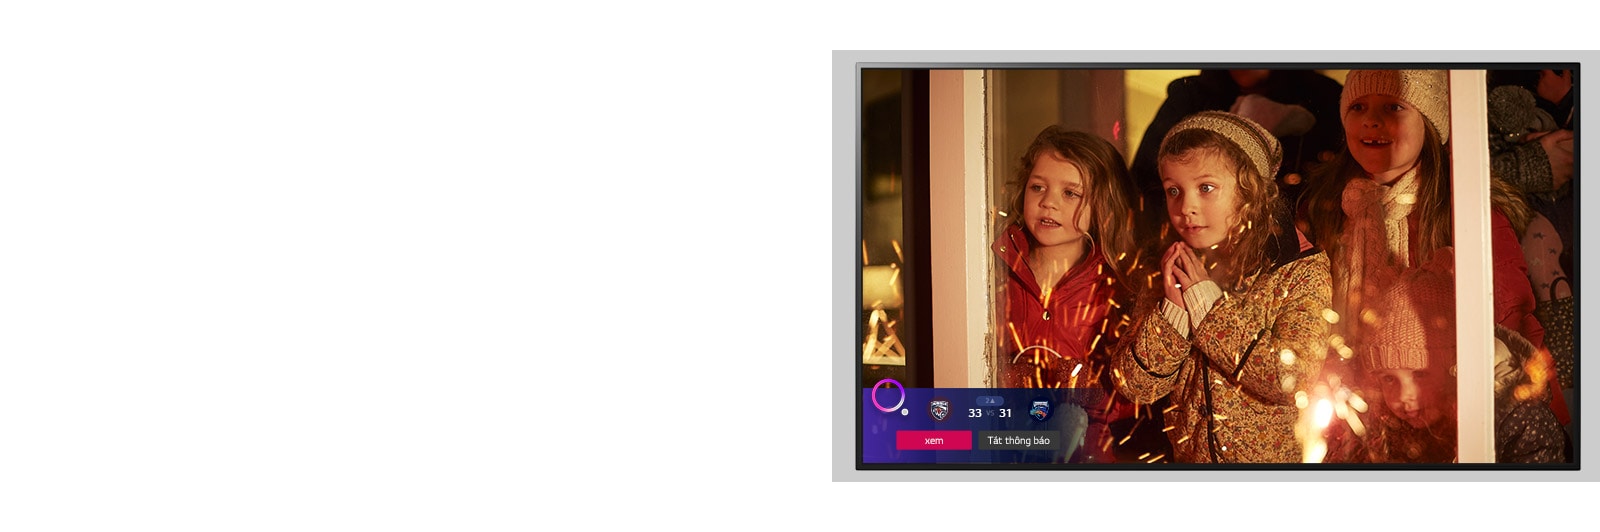 Màn hình TV hiển thị cảnh từ một bộ phim Giáng sinh với Thông báo thể thao